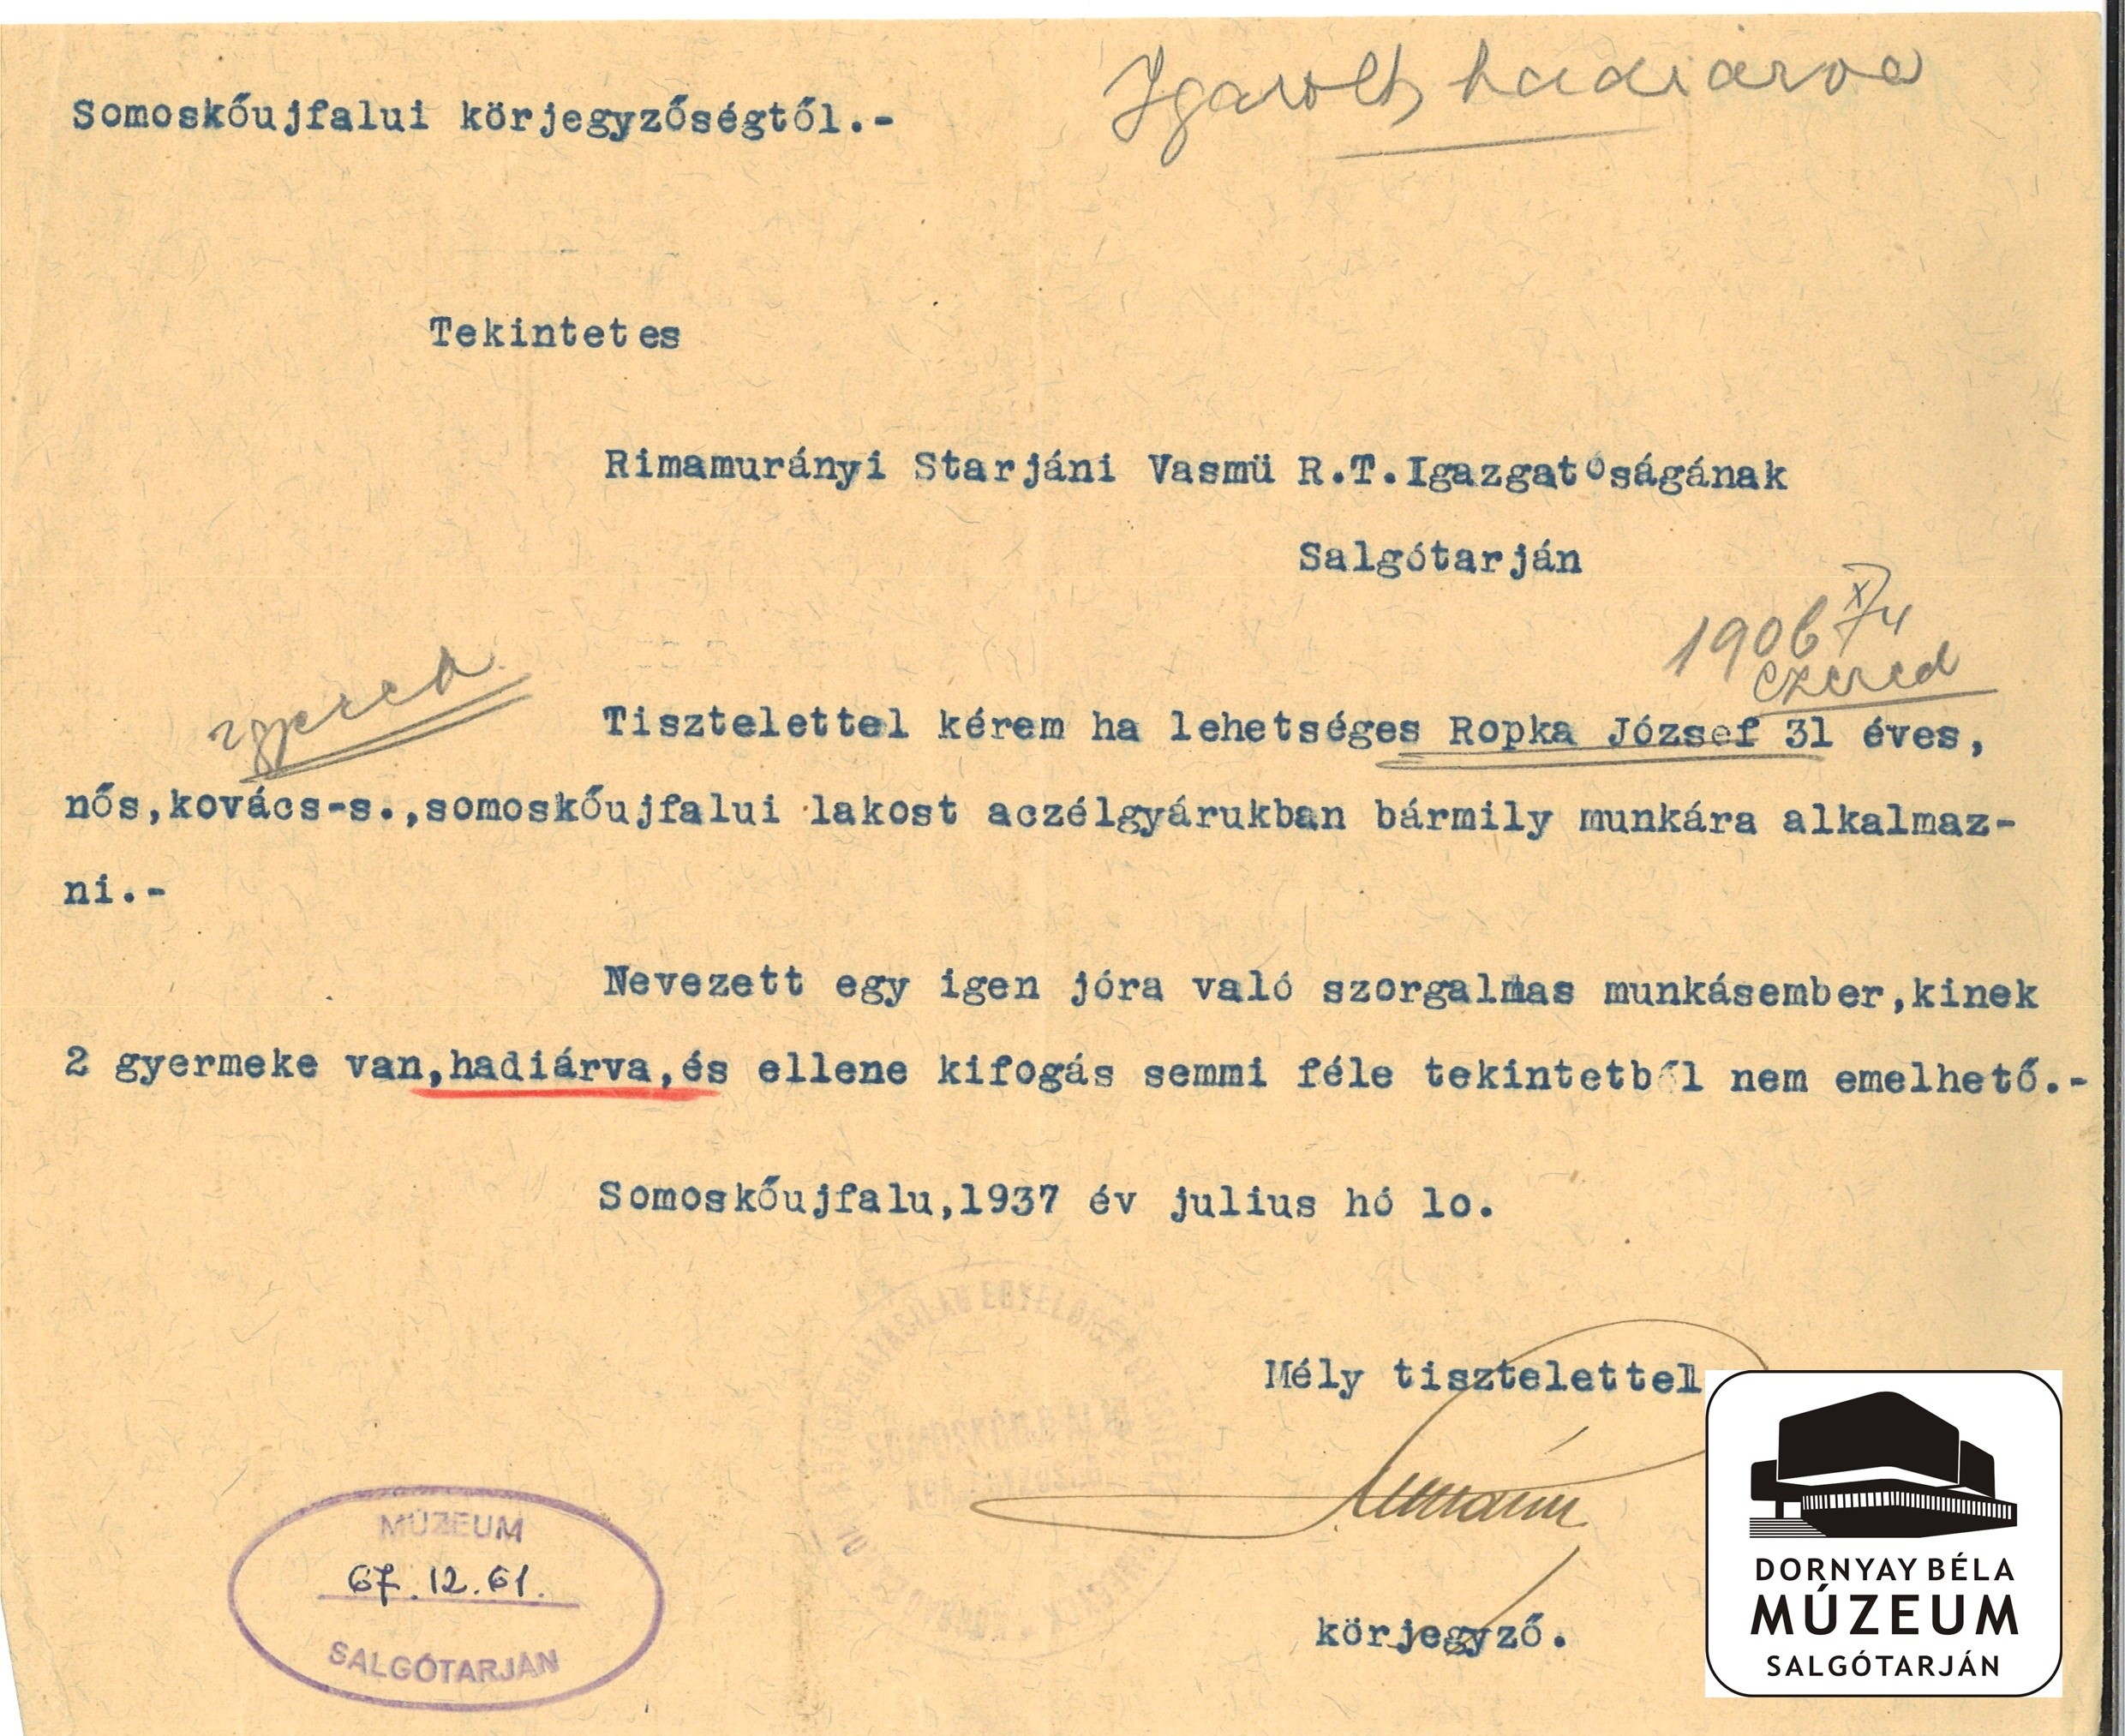 Rapka József somoskőújfalui lakos Acélgyári alkalmazását kéri a körjegyző (Dornyay Béla Múzeum, Salgótarján CC BY-NC-SA)